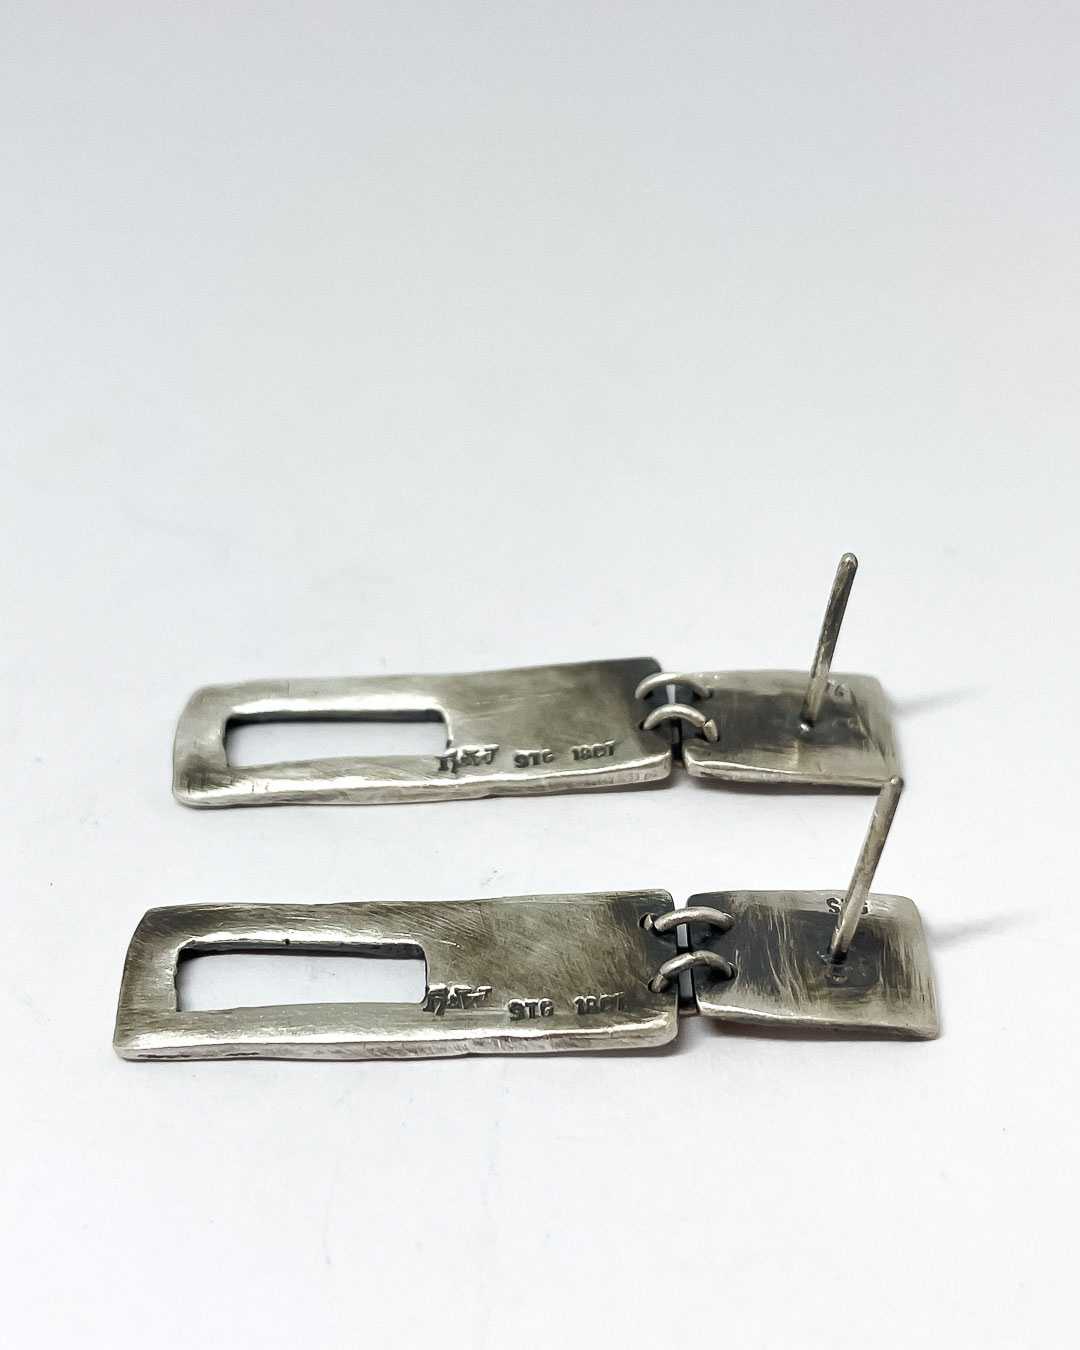 Modernist Earrings No. 8 - Geometric Cutout Drop Earrings in Oxidisded Sterling Silver + 18ct Gold